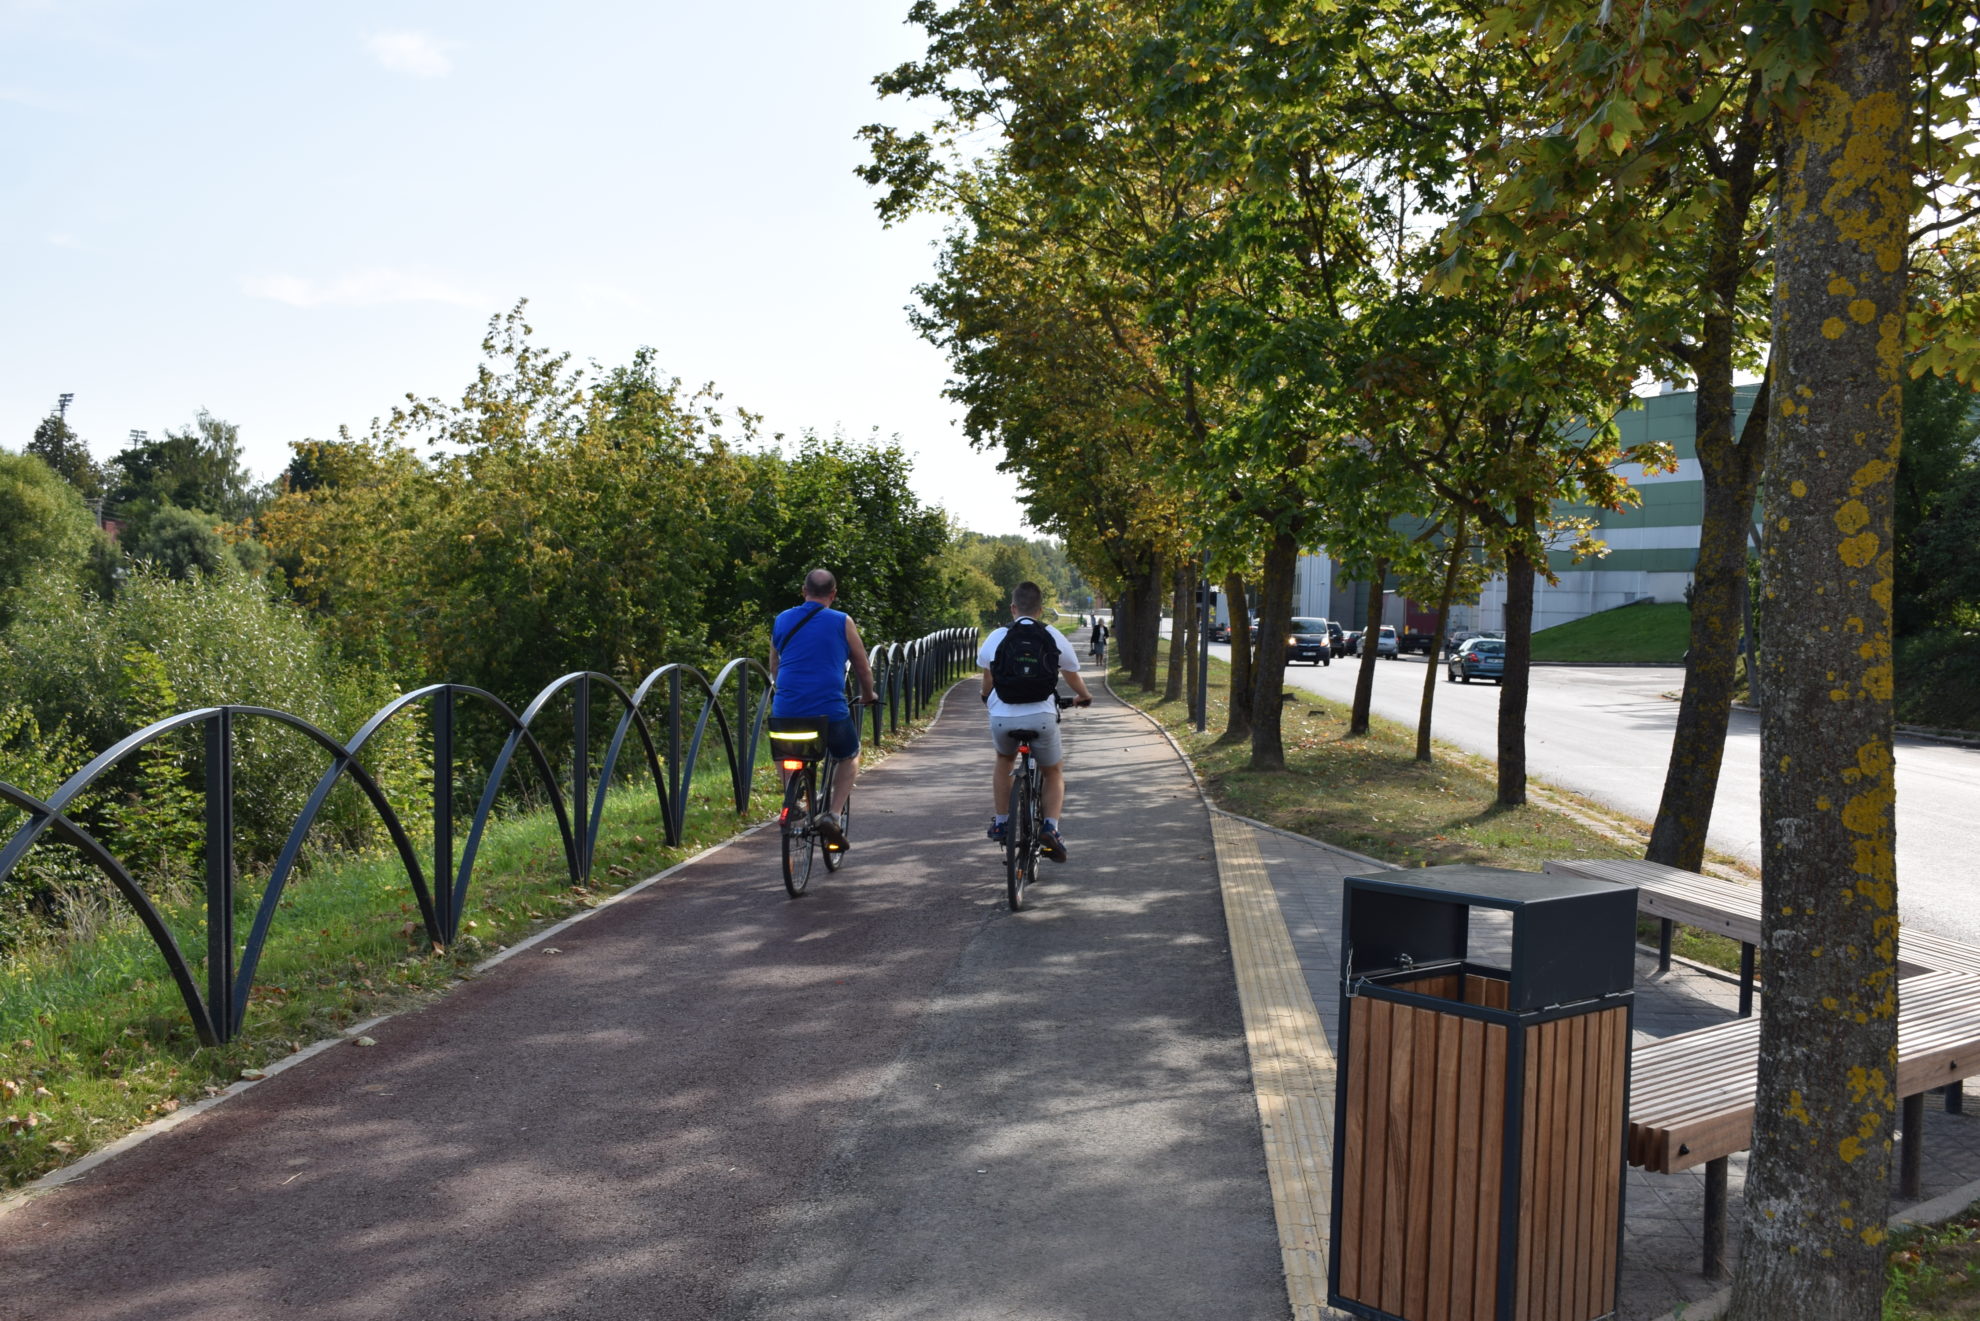 Susisiekimo ministerija Panevėžio miesto savivaldybei skyrė 511,7 tūkst. Eur pėsčiųjų ir dviračių takams remontuoti.